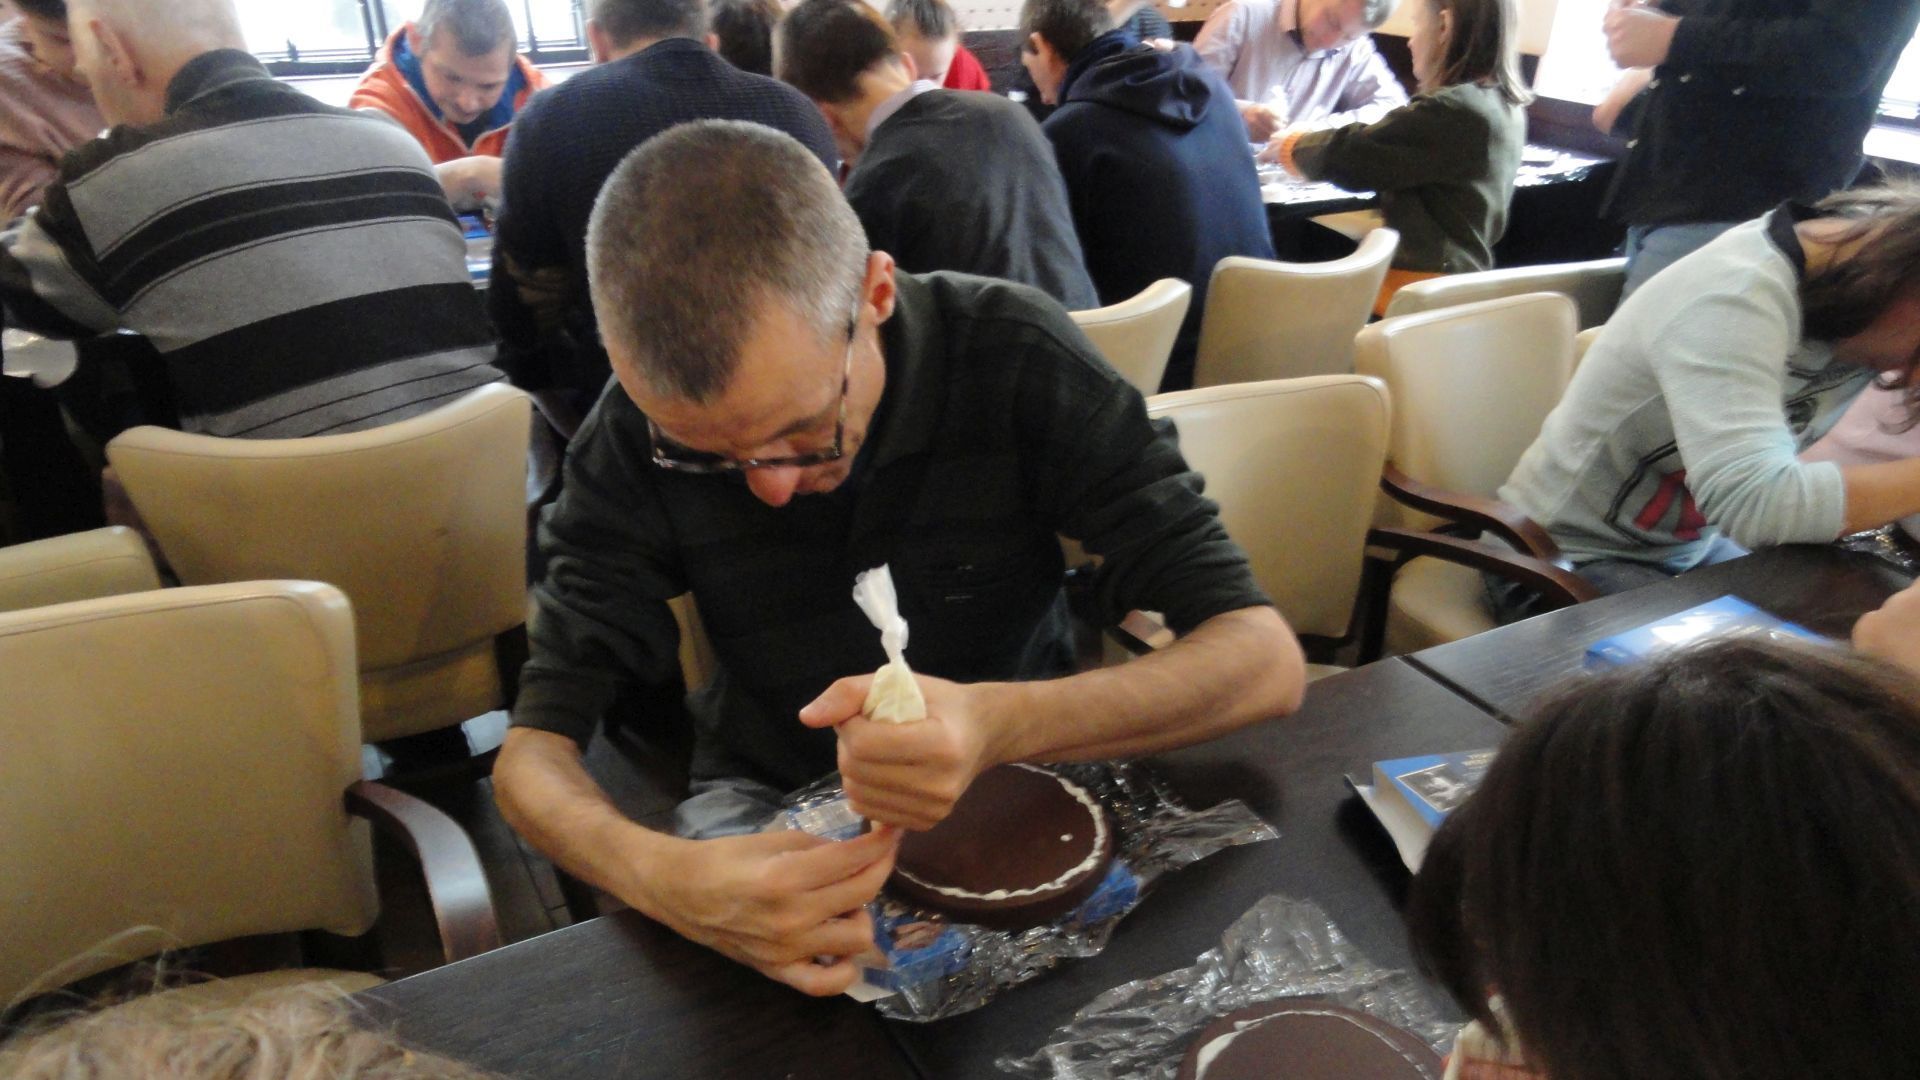 Grzegorz dekoruje torcik wedlowski biała czekoladą.